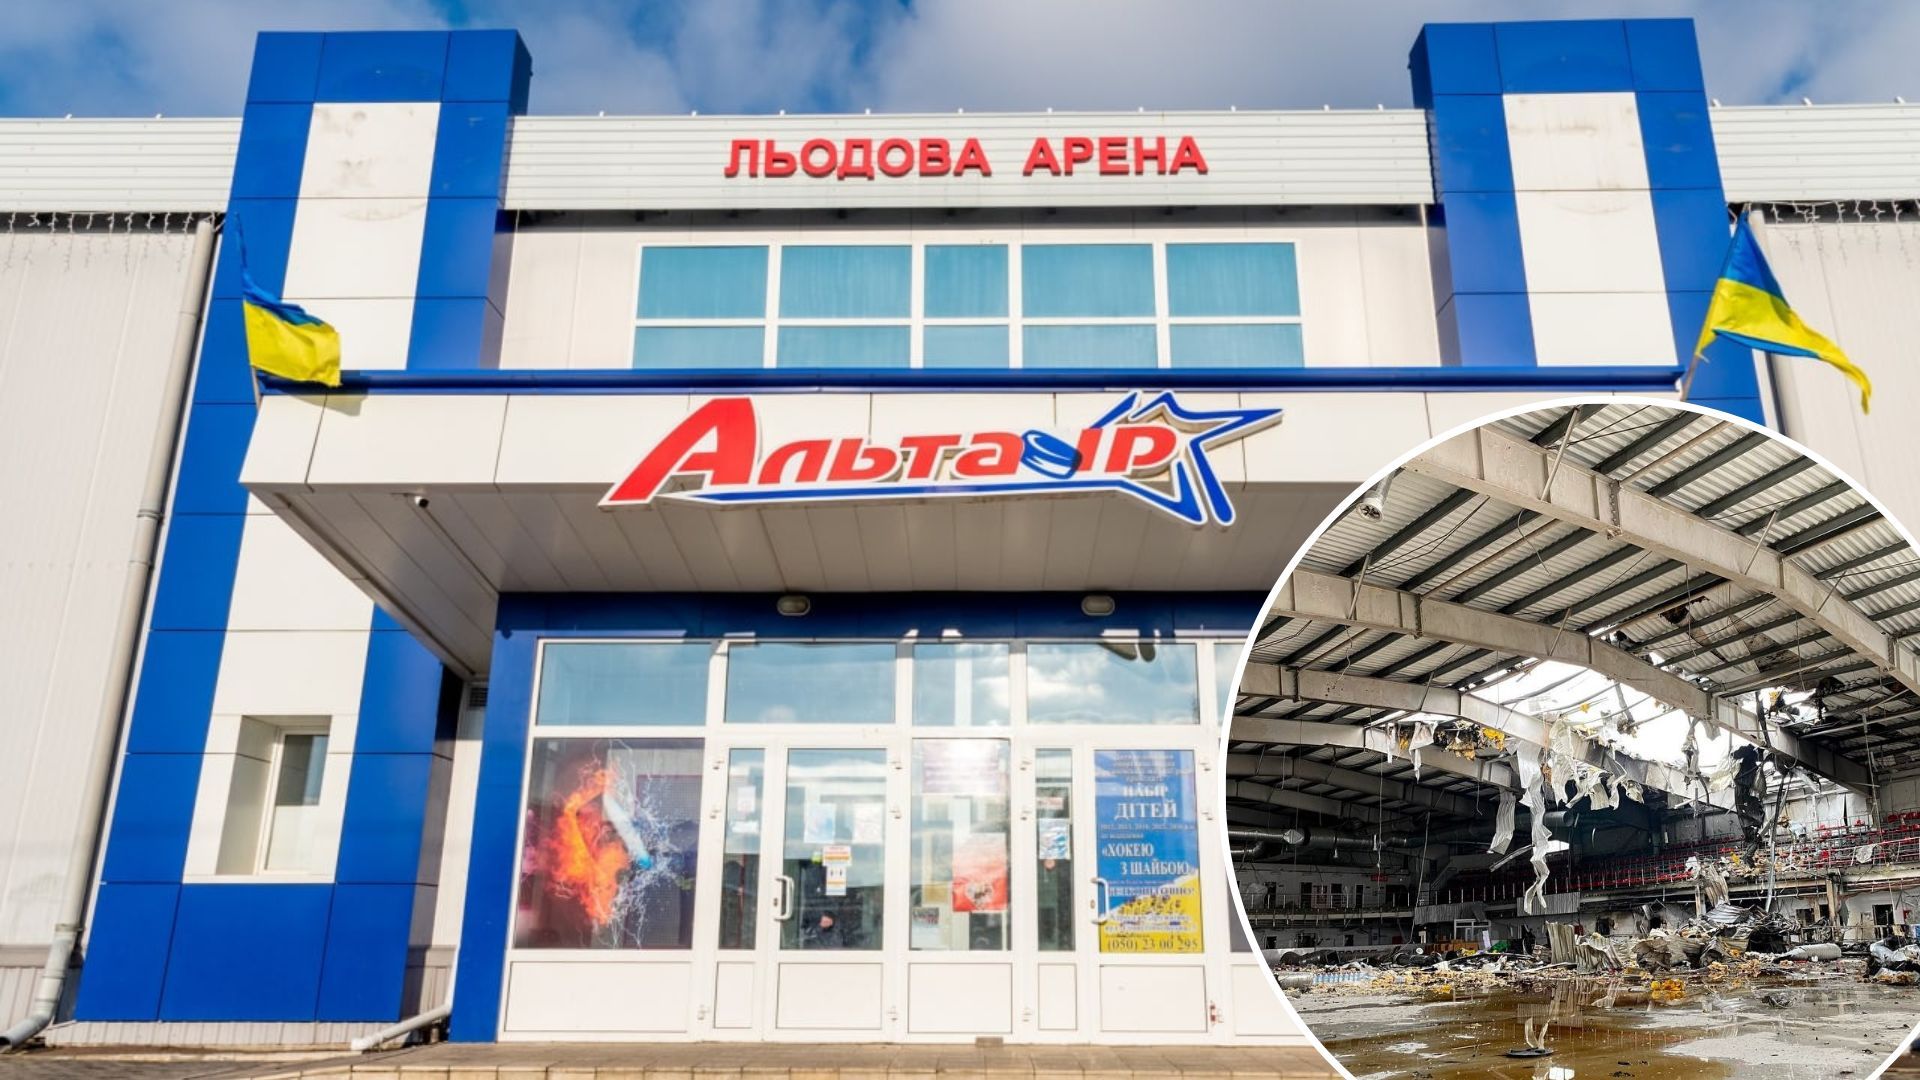 Как выглядит ледовая арена Альтаир в Дружковке после ракетных обстрелов 3 января 2023